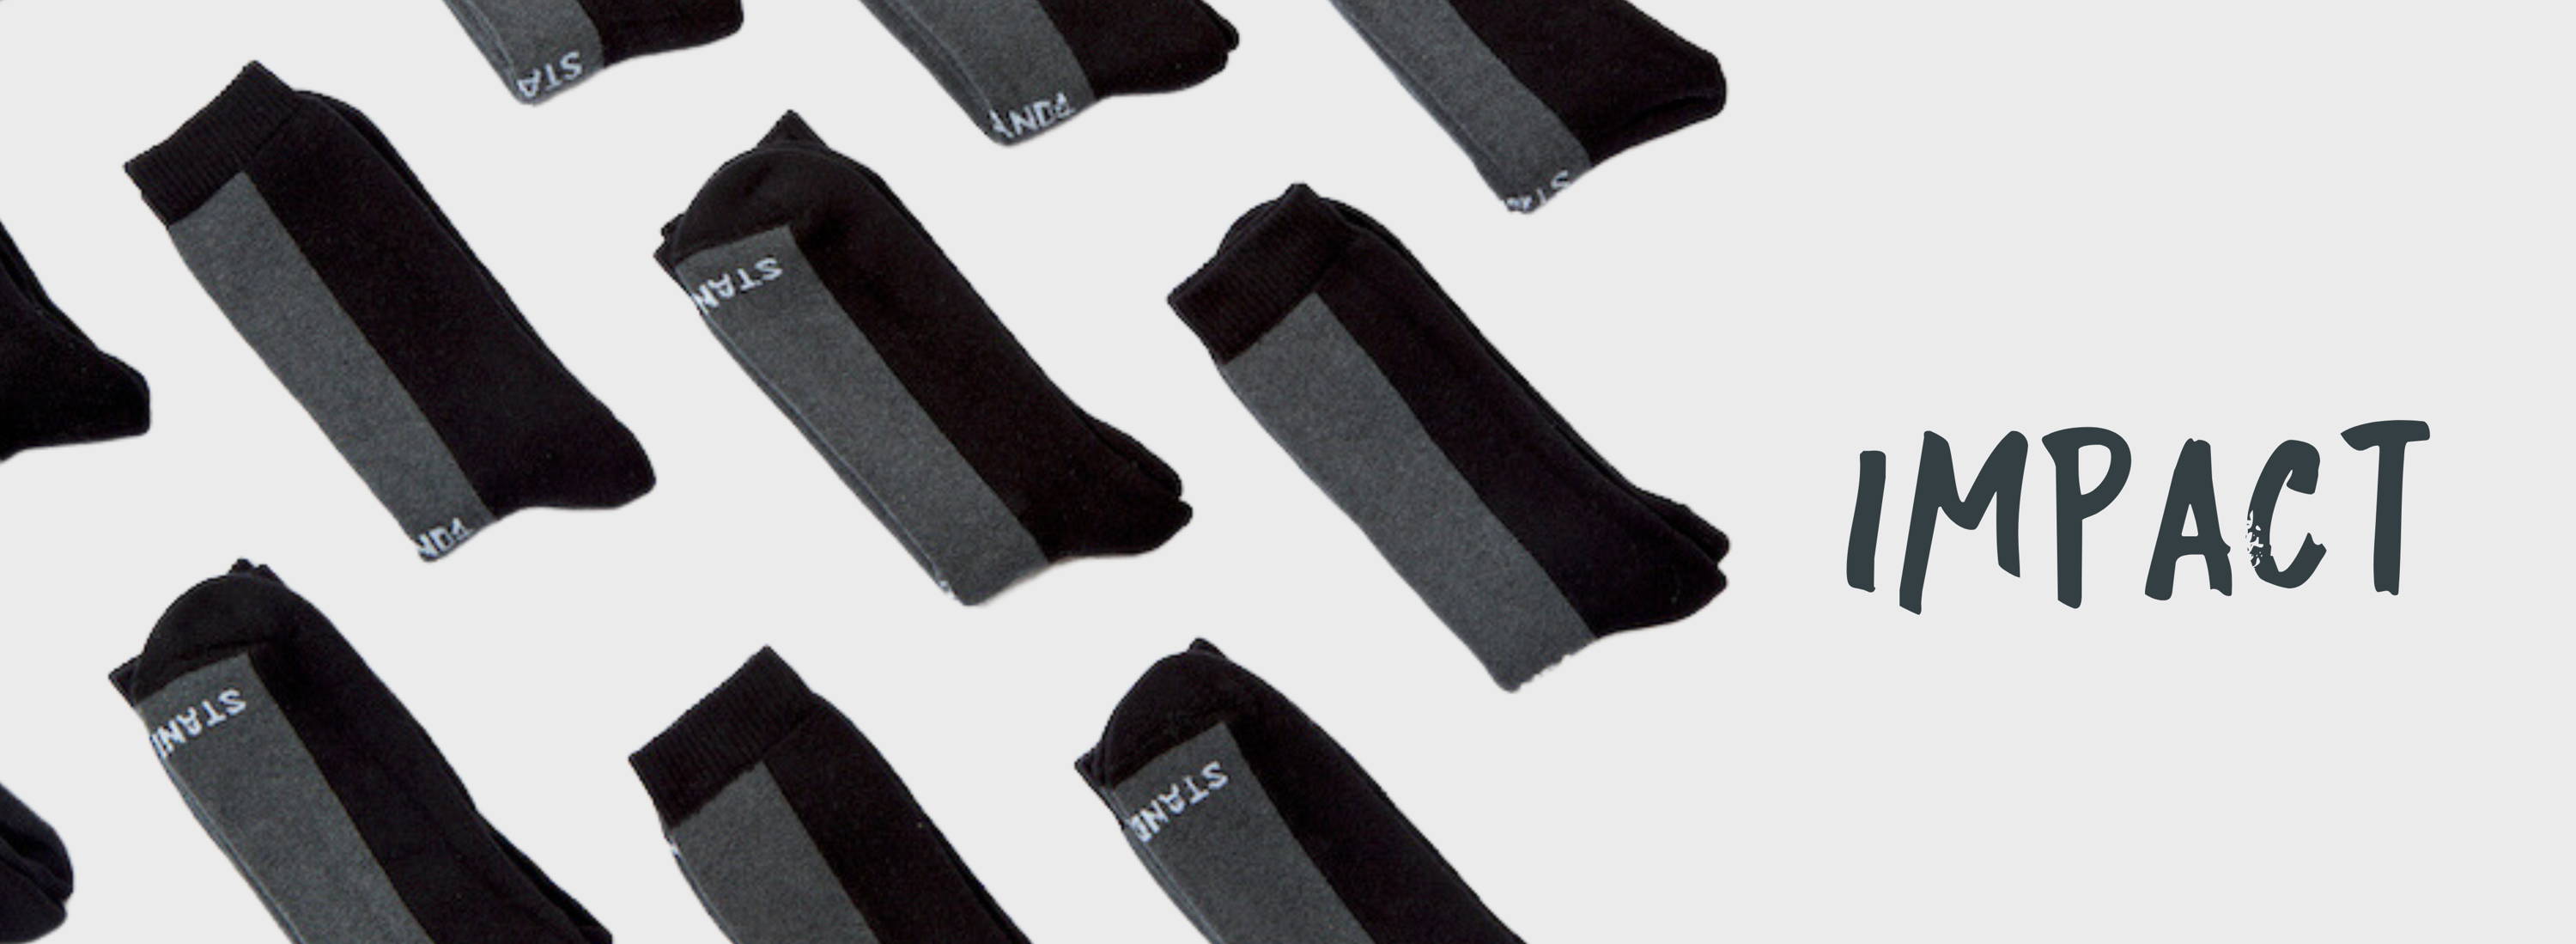 Impactful custom branded socks